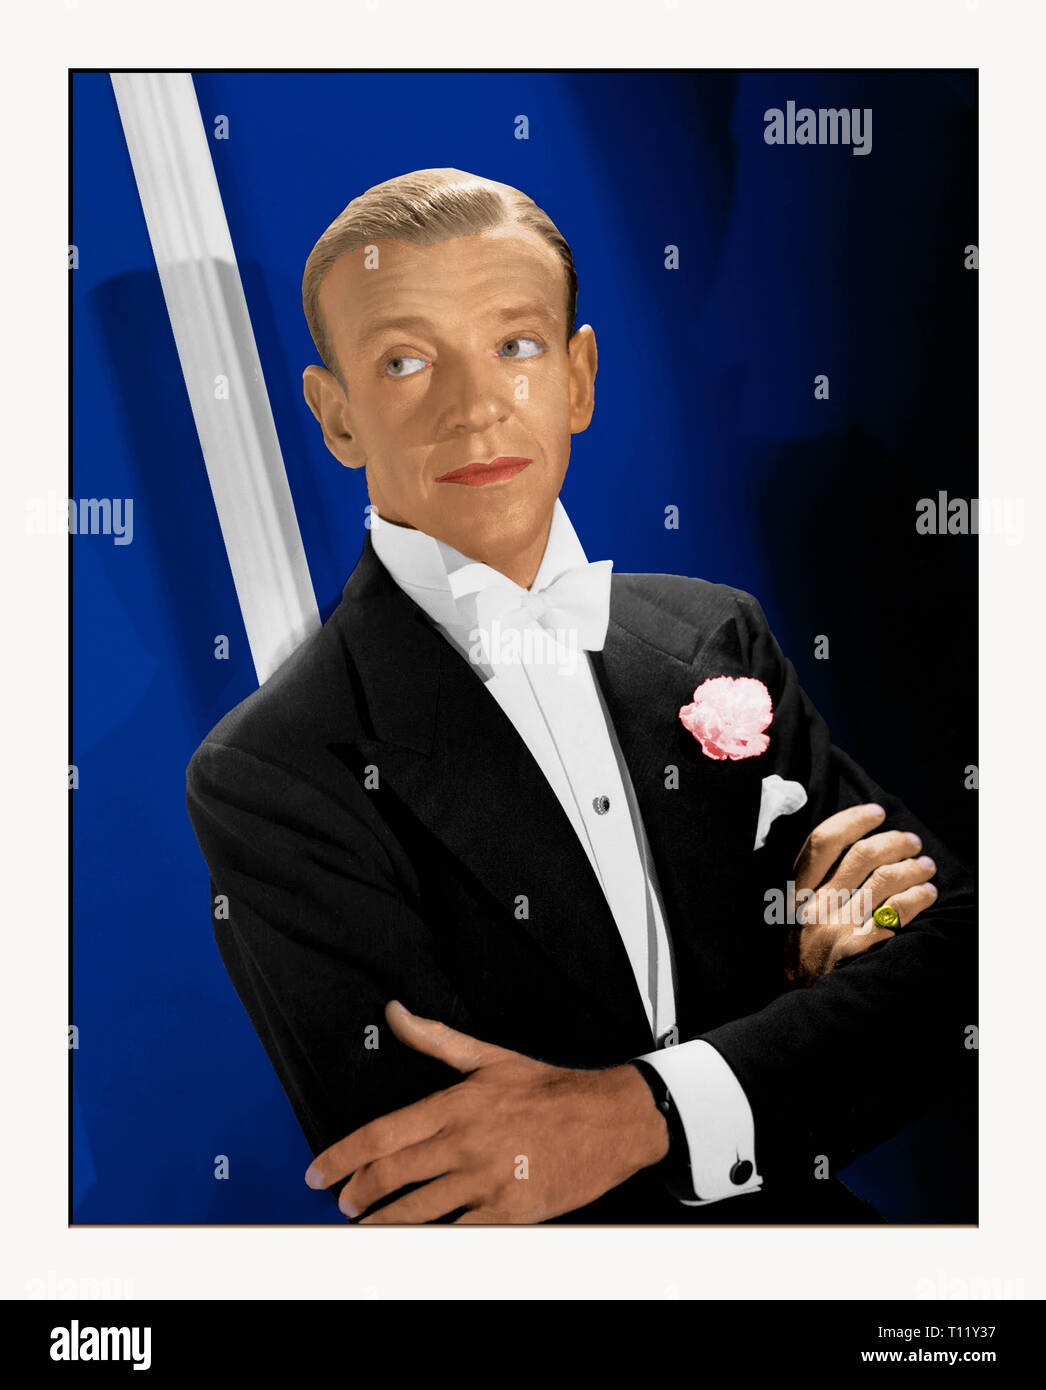 Fred Astaire (Friedrich Austerlitz geboren;[1] Mai 10, 1899 - Juni 22, 1987) war ein US-amerikanischer Tänzer, Sänger, Schauspieler, Choreograf und Fernsehmoderator. Er gilt als einer der einflussreichsten Tänzer in der Geschichte von Film und Fernsehen musicals Credit: Hollywood Foto Archiv/MediaPunch angesehen Stockfoto